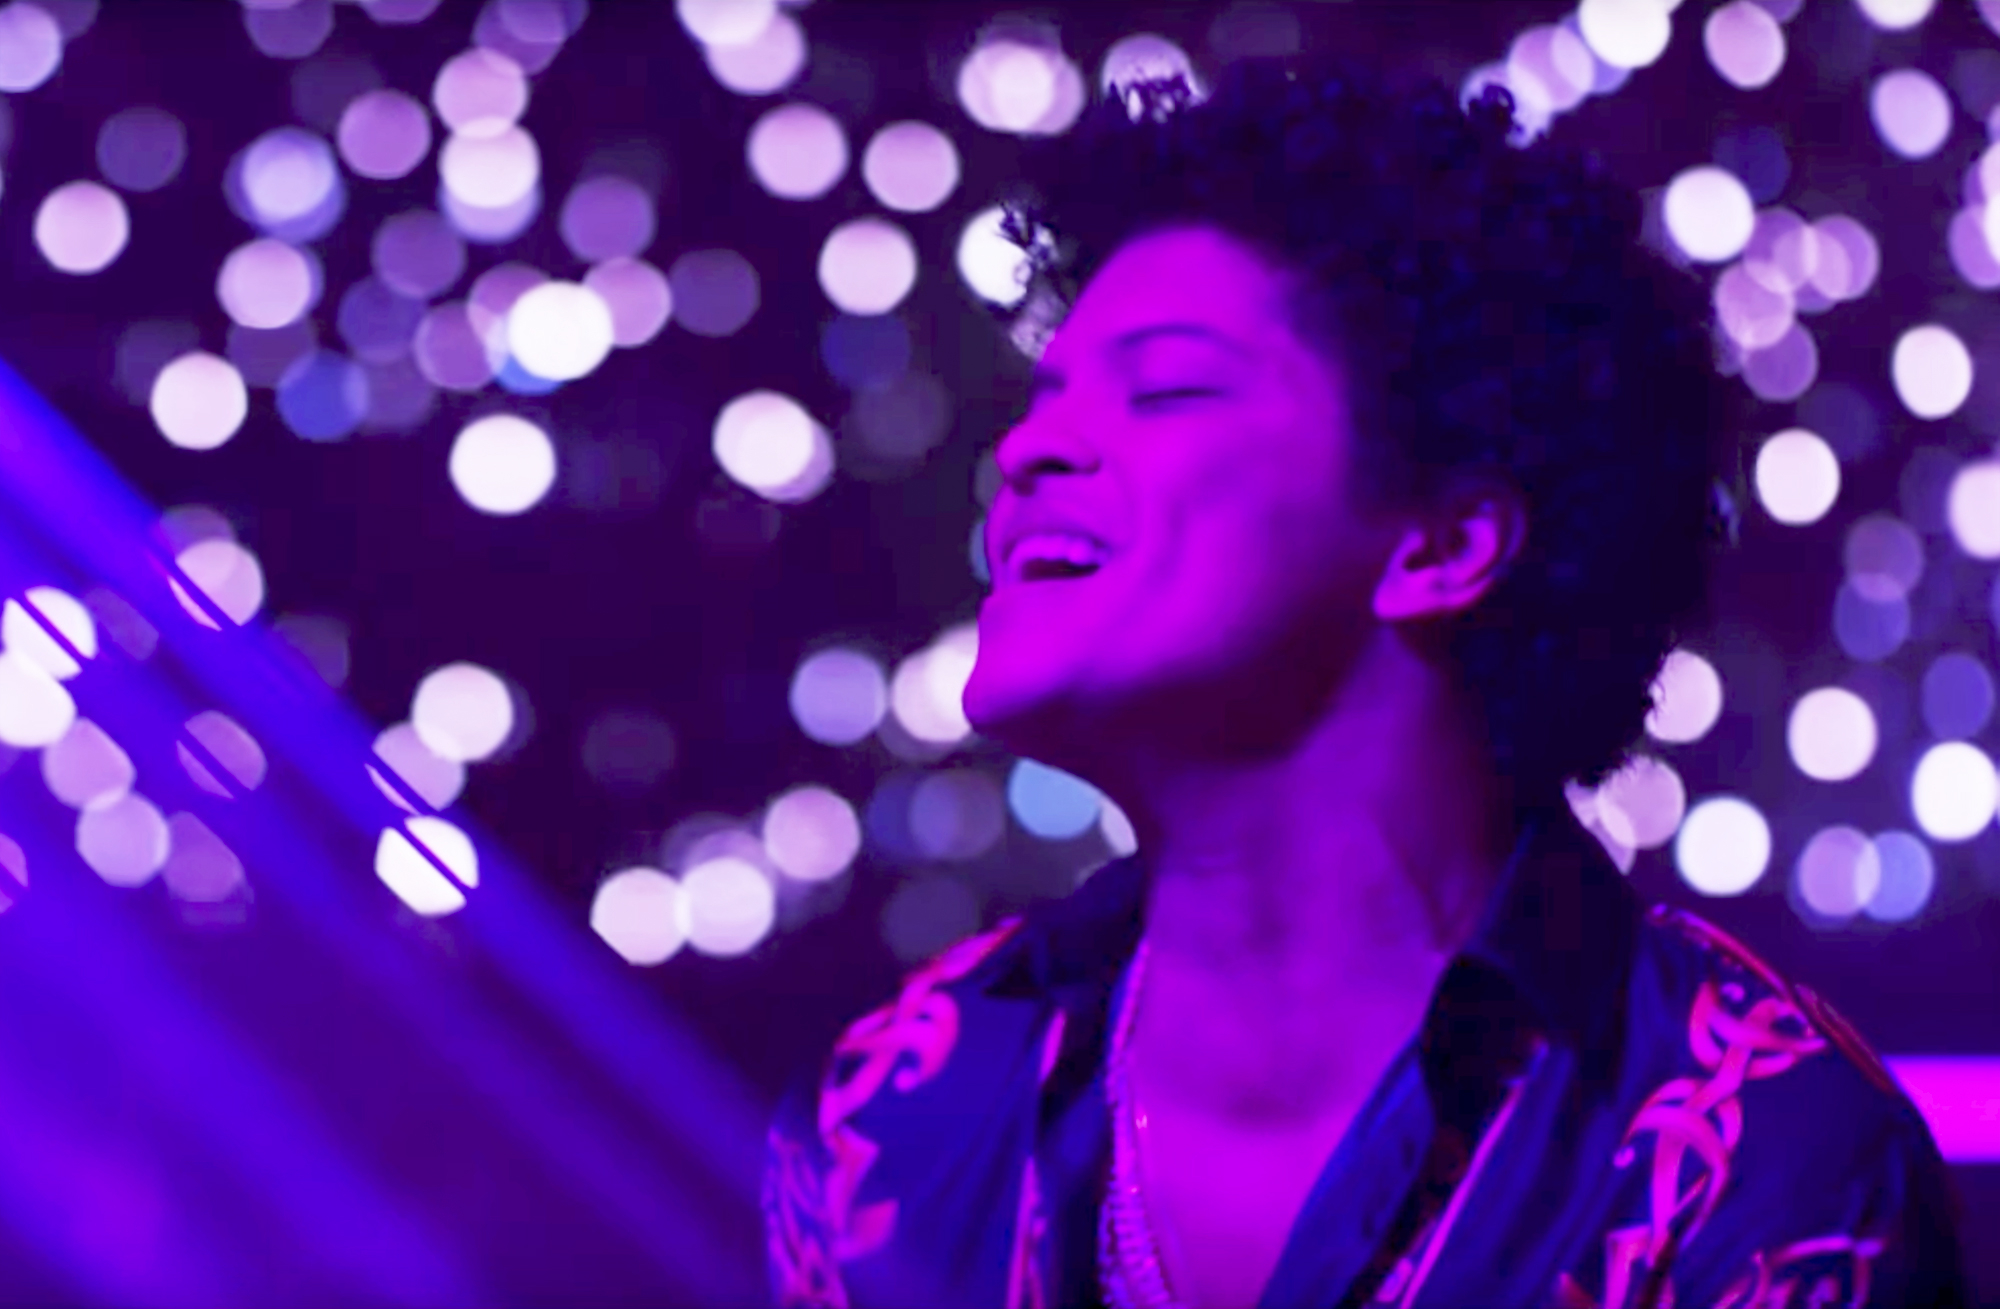 Bruno Mars Drops Sexy Music Video ‘Versace on the Floor’ With Zendaya